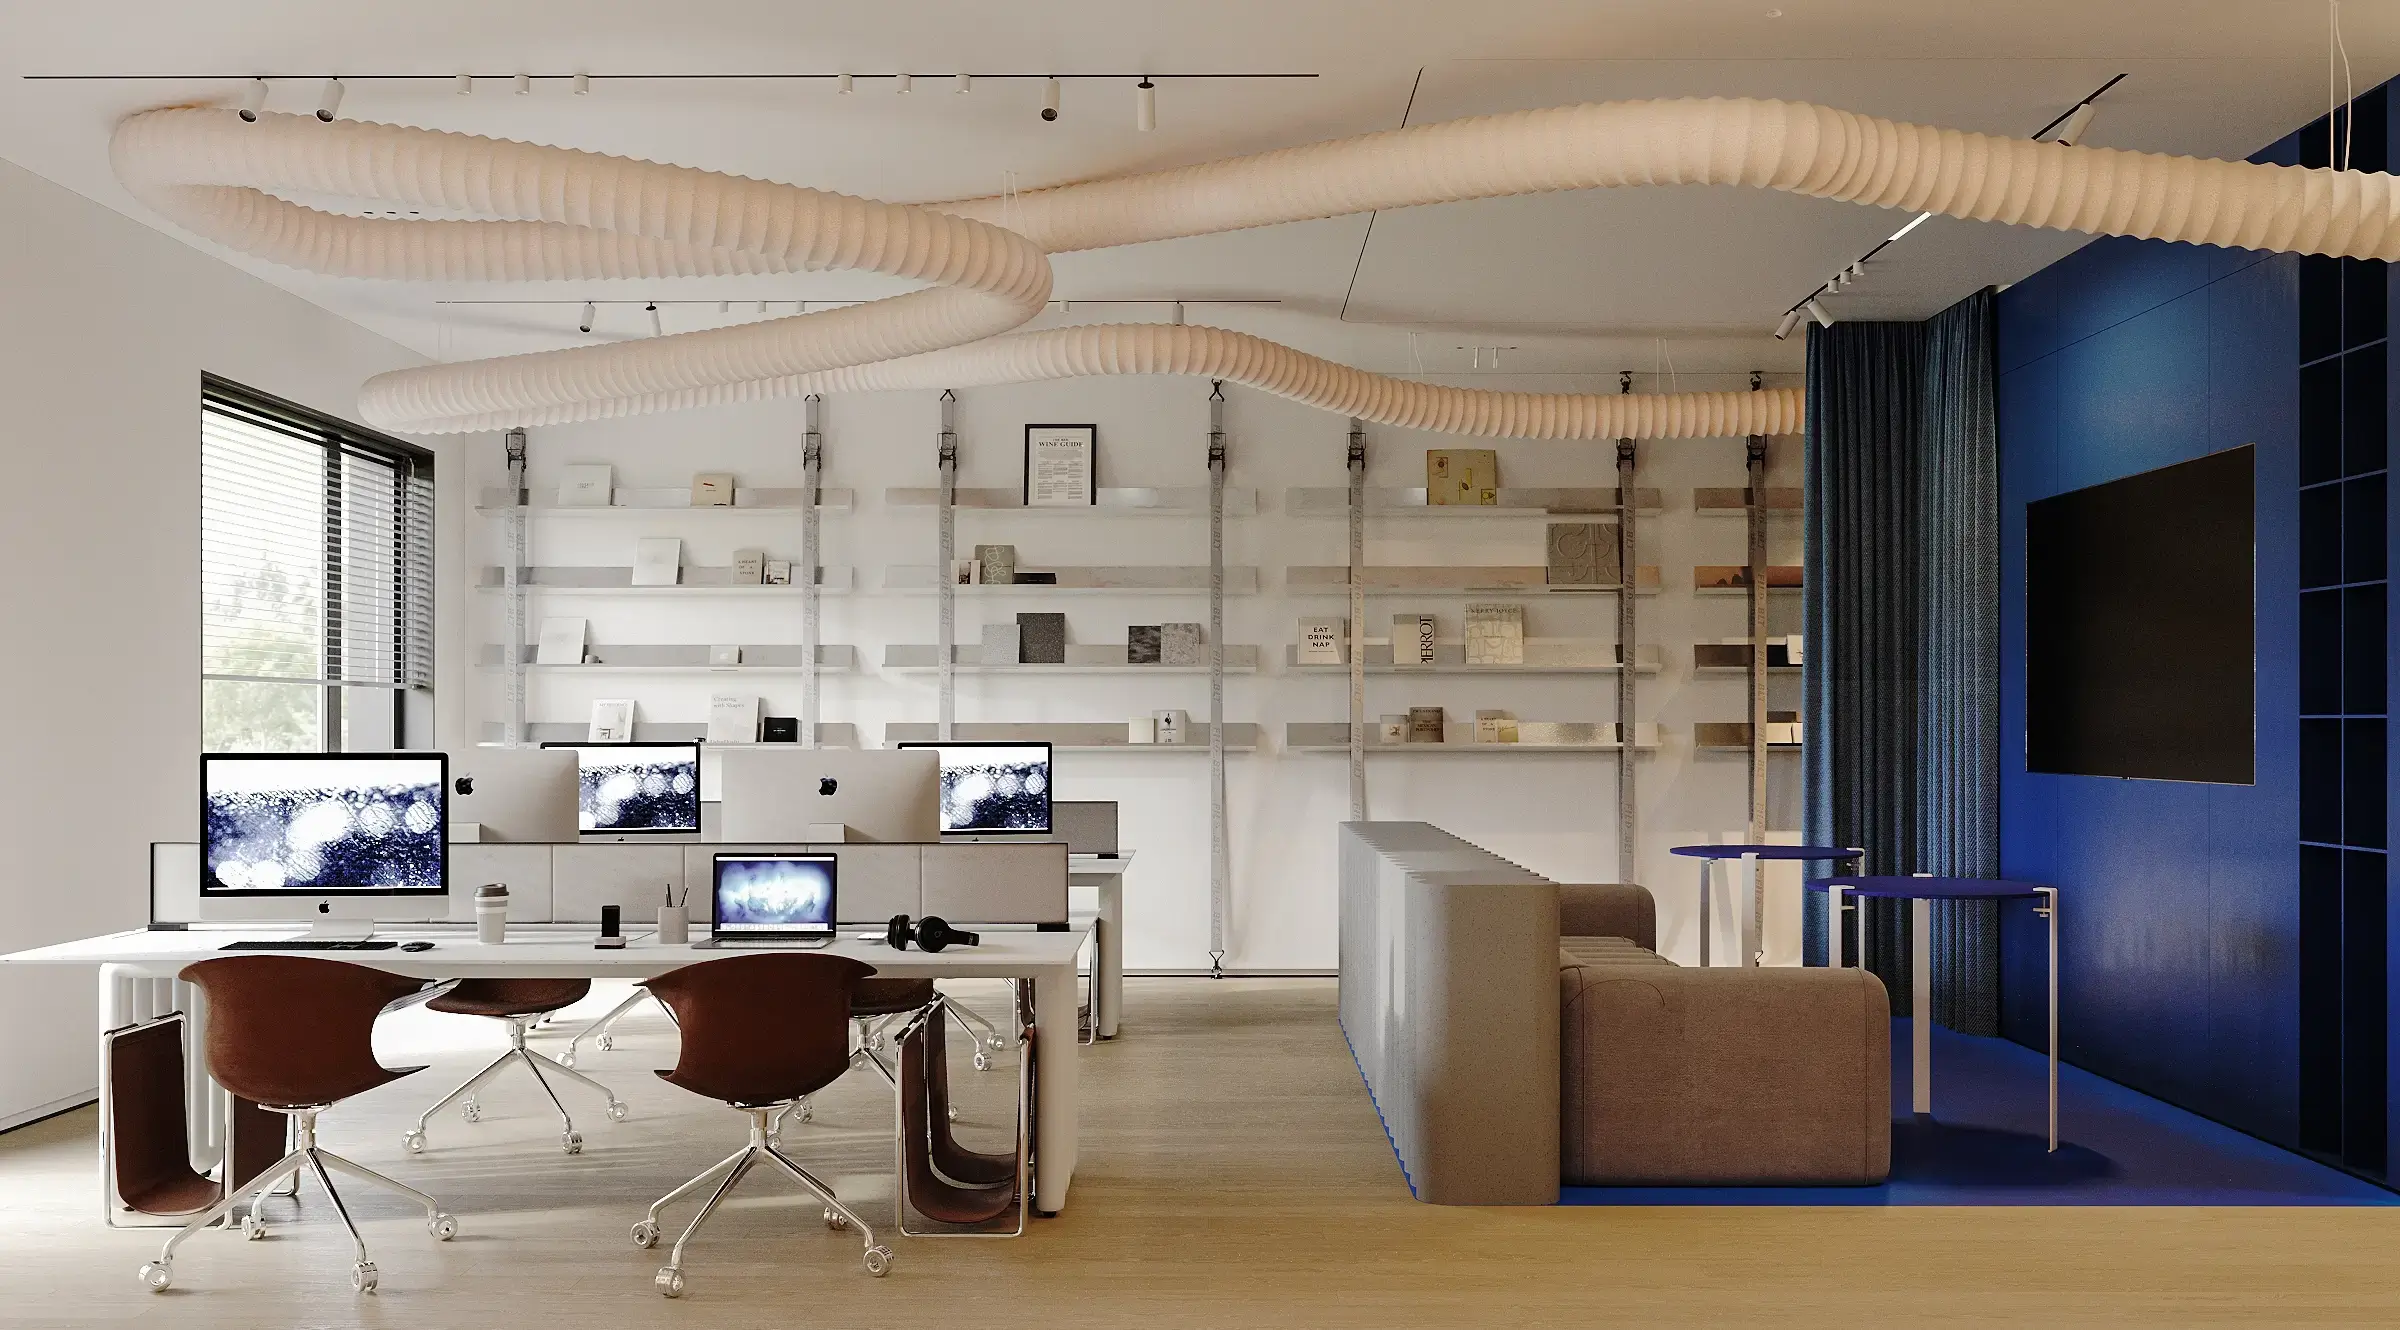 Журнал INTERIOR DESIGN включив дизайн офісу від ZIKZAK Architects до кращих проєктів нових робочих просторів зі всього світу